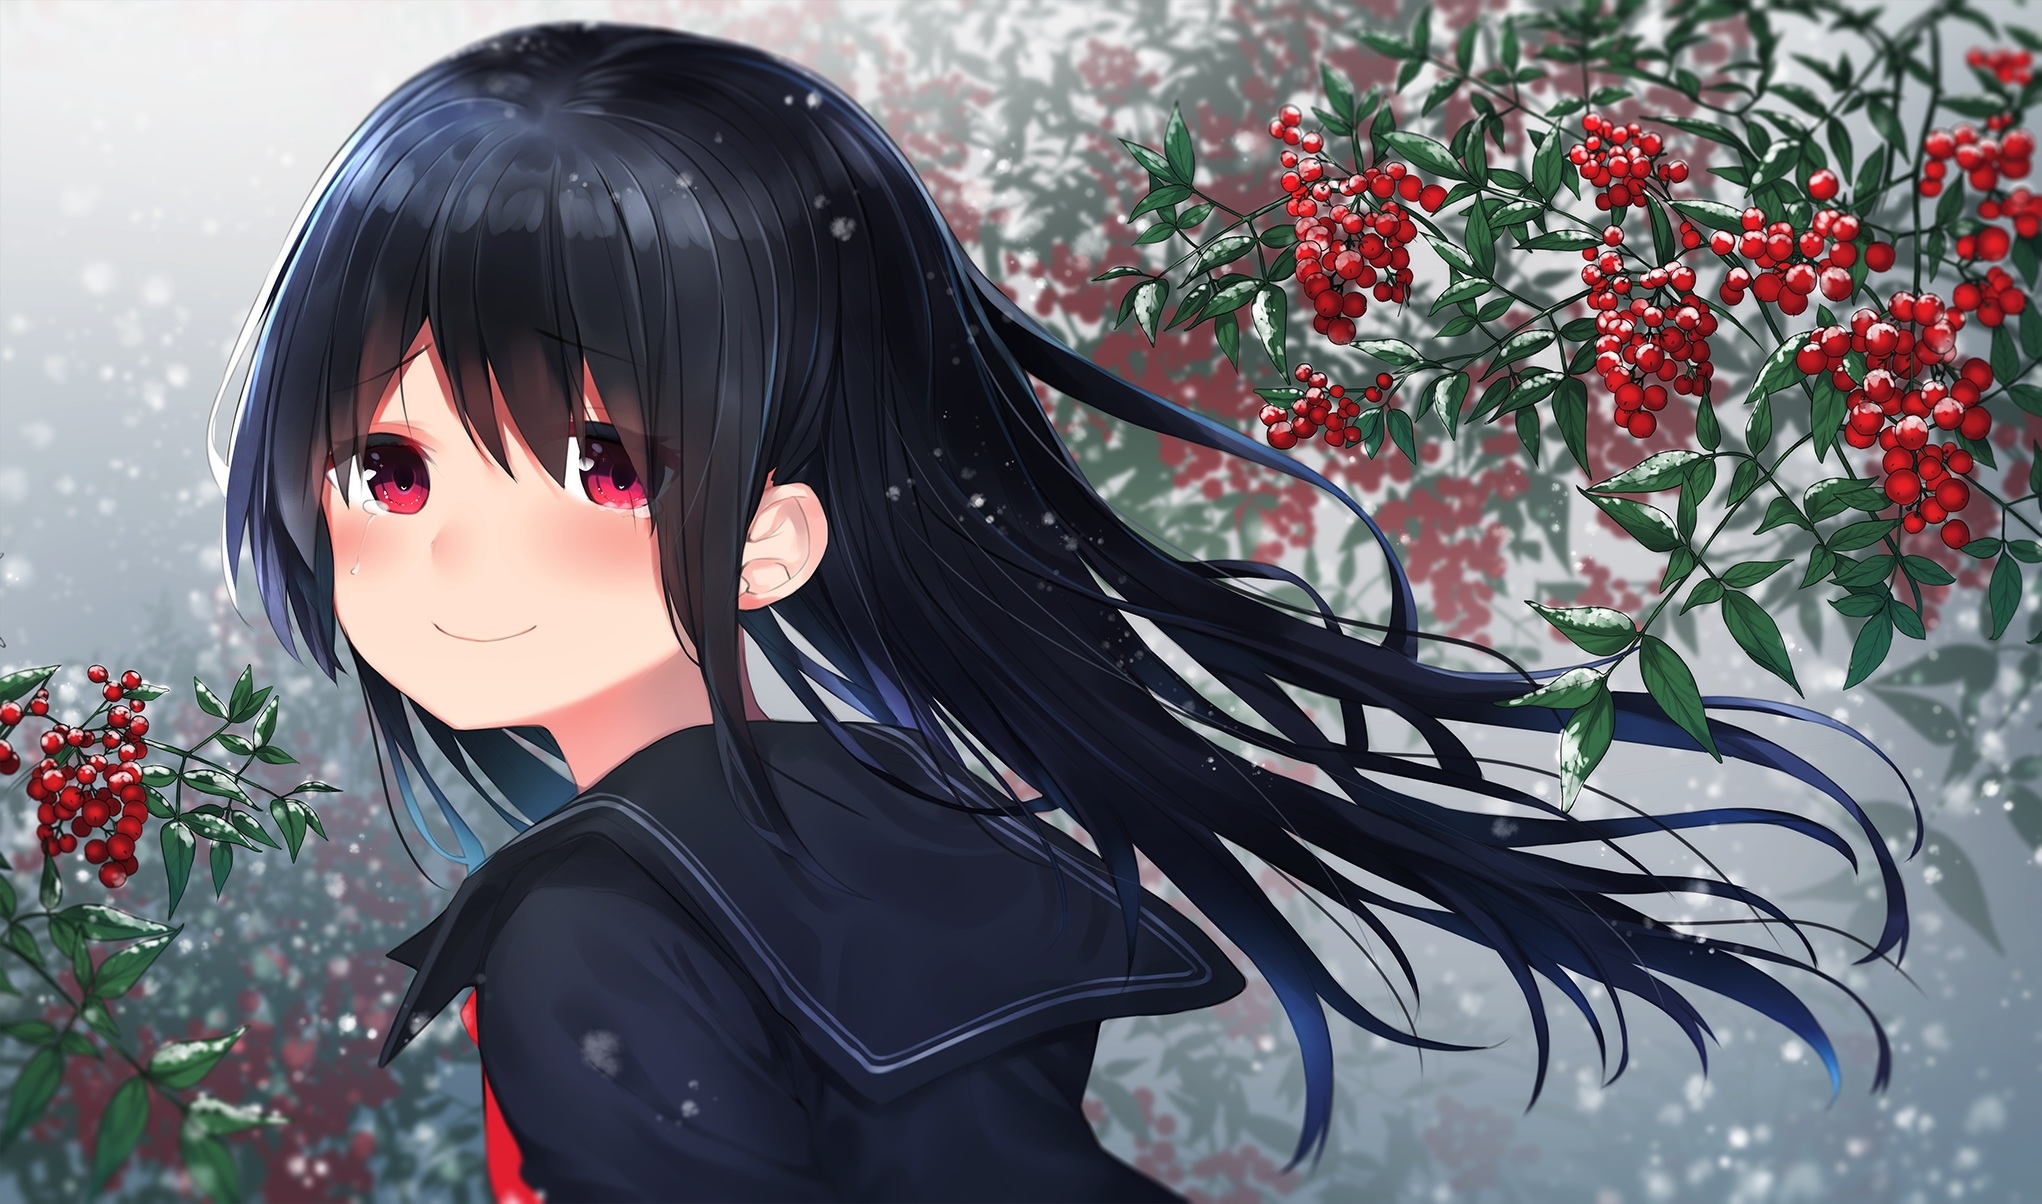 Wallpapers anime girl black hair smiling on the desktop